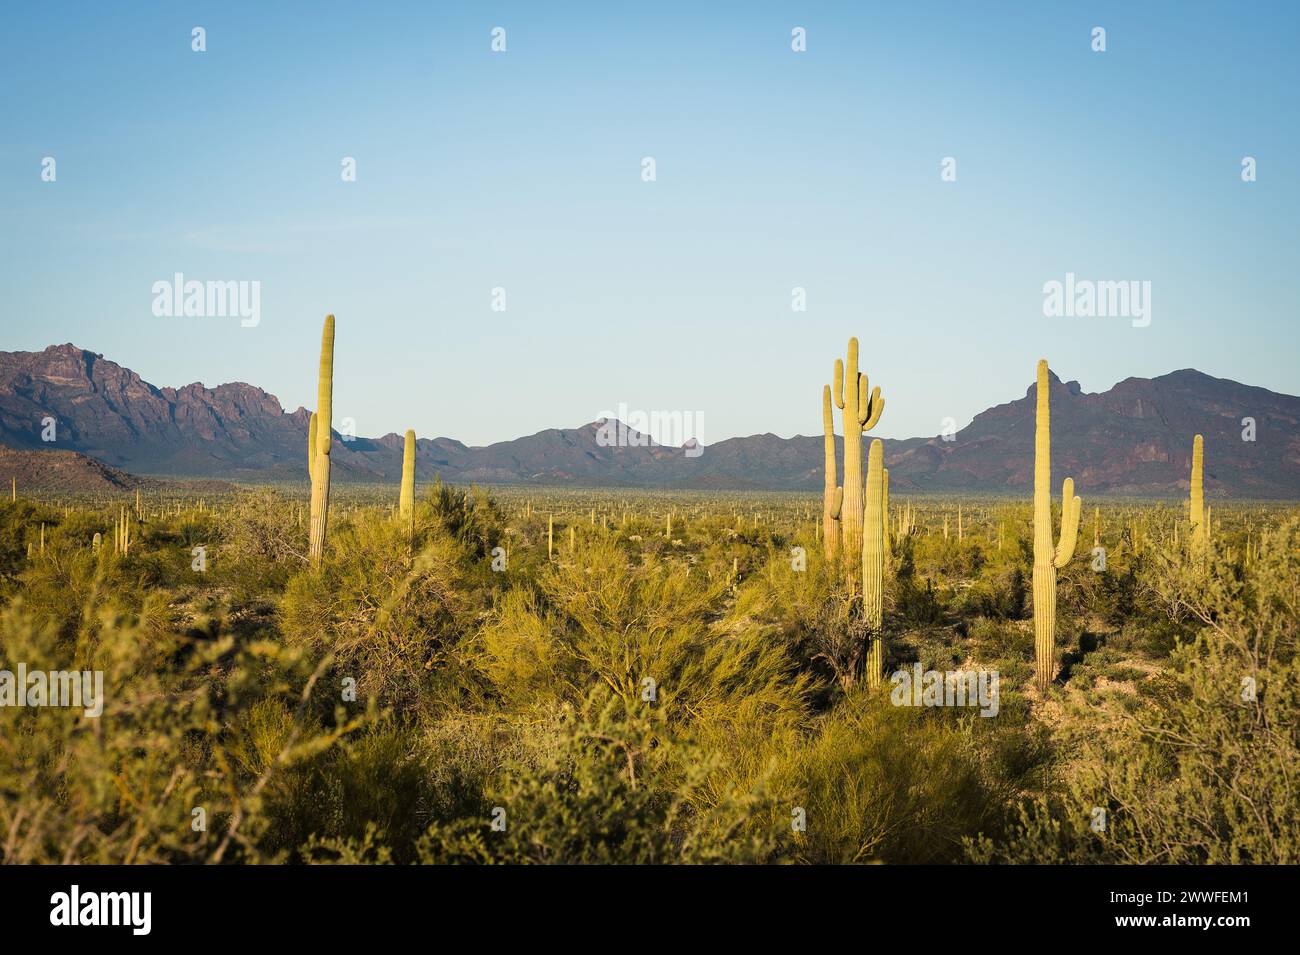 Cactus Saguaro e Organ Pipe e Joshua Trees presso l'Organ Pipe Cactus National Monument nel sud dell'Arizona, USA. Foto Stock